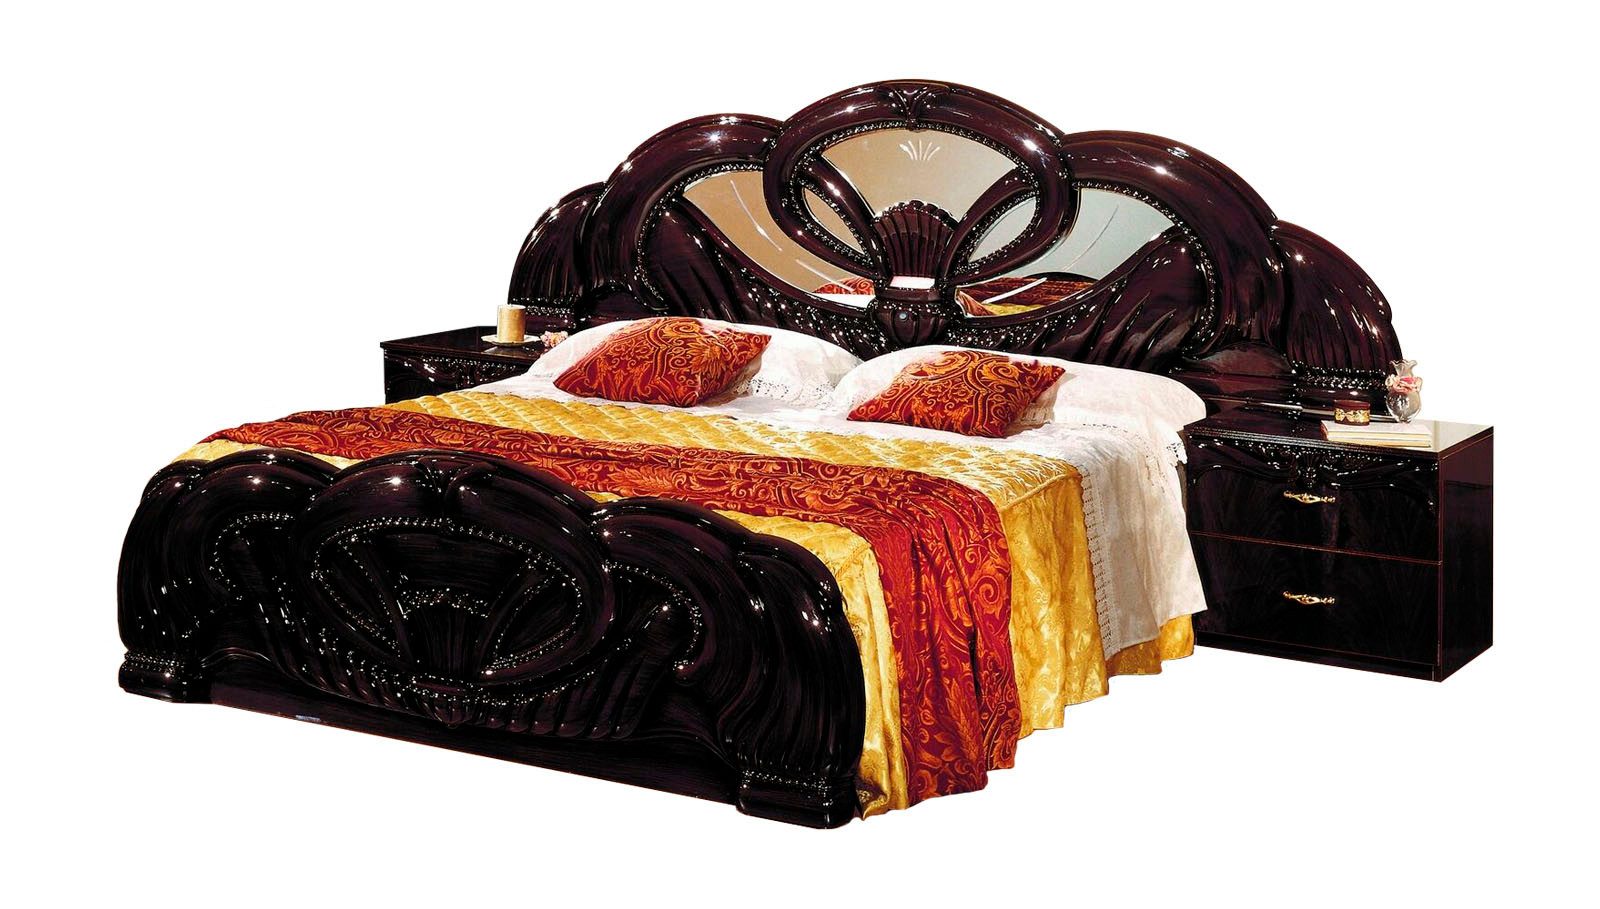 JVmoebel Bett Exclusiv Bett Design Polster Betten Doppel Betten Holz Italienische